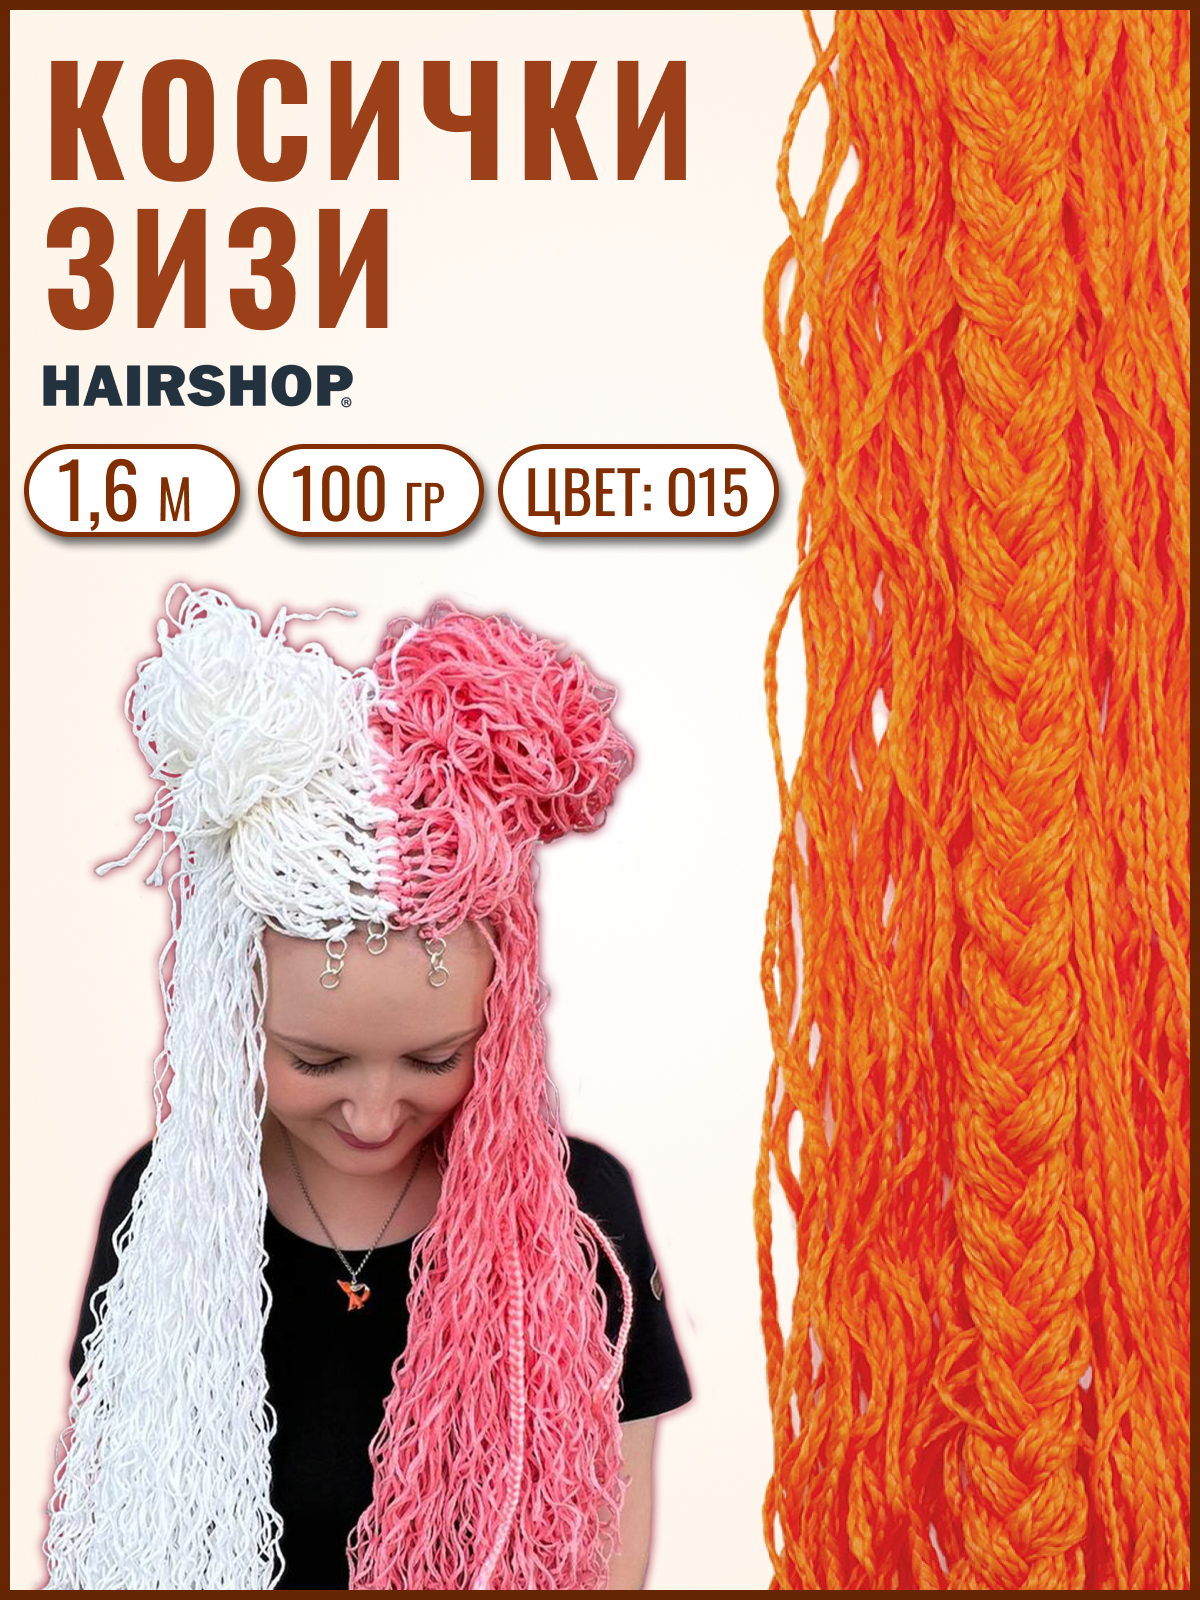 Косички Hairshop Зизи волна О15 Оранжевый косички hairshop зизи градиент волна 30 613 100г